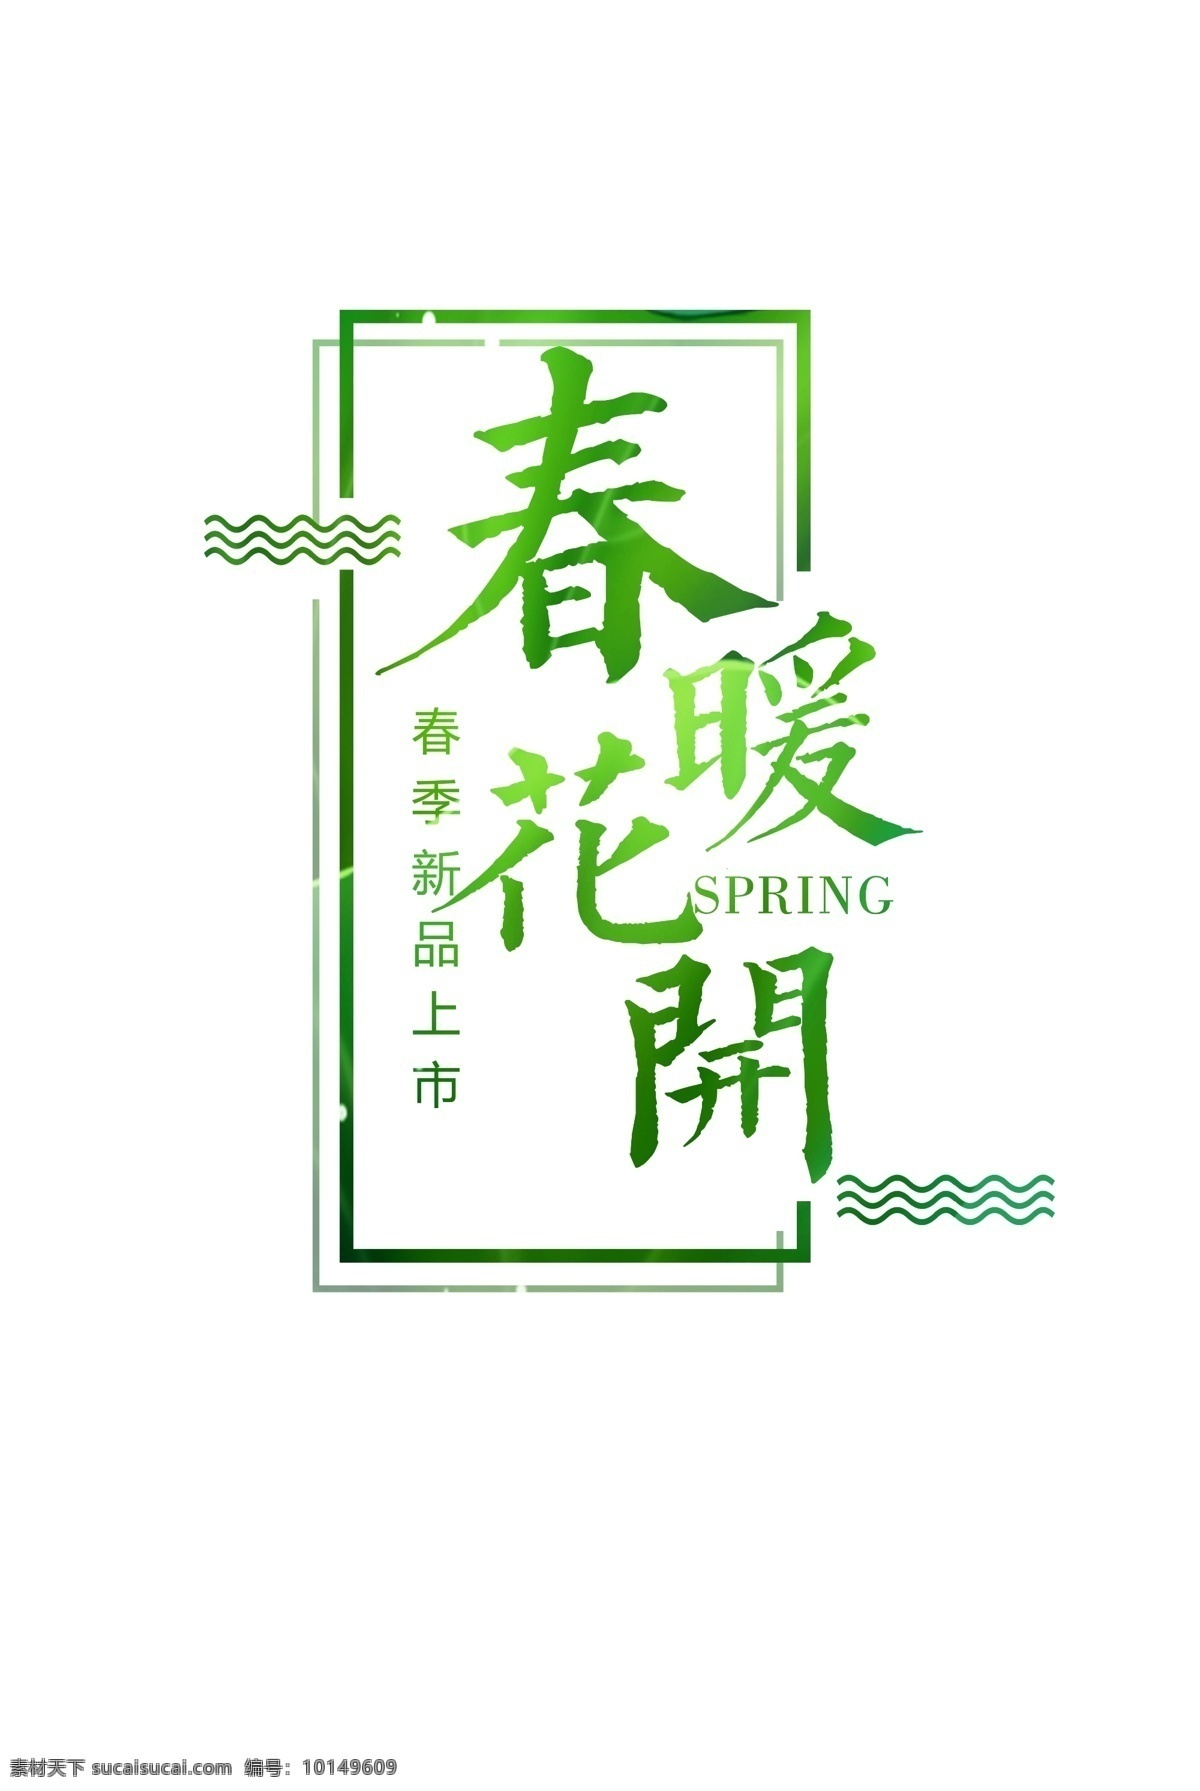 绿色 清新 春暖花开 字体 元素 春季上新 春季新品 绿叶 艺术字图案 字体设计 字体下载